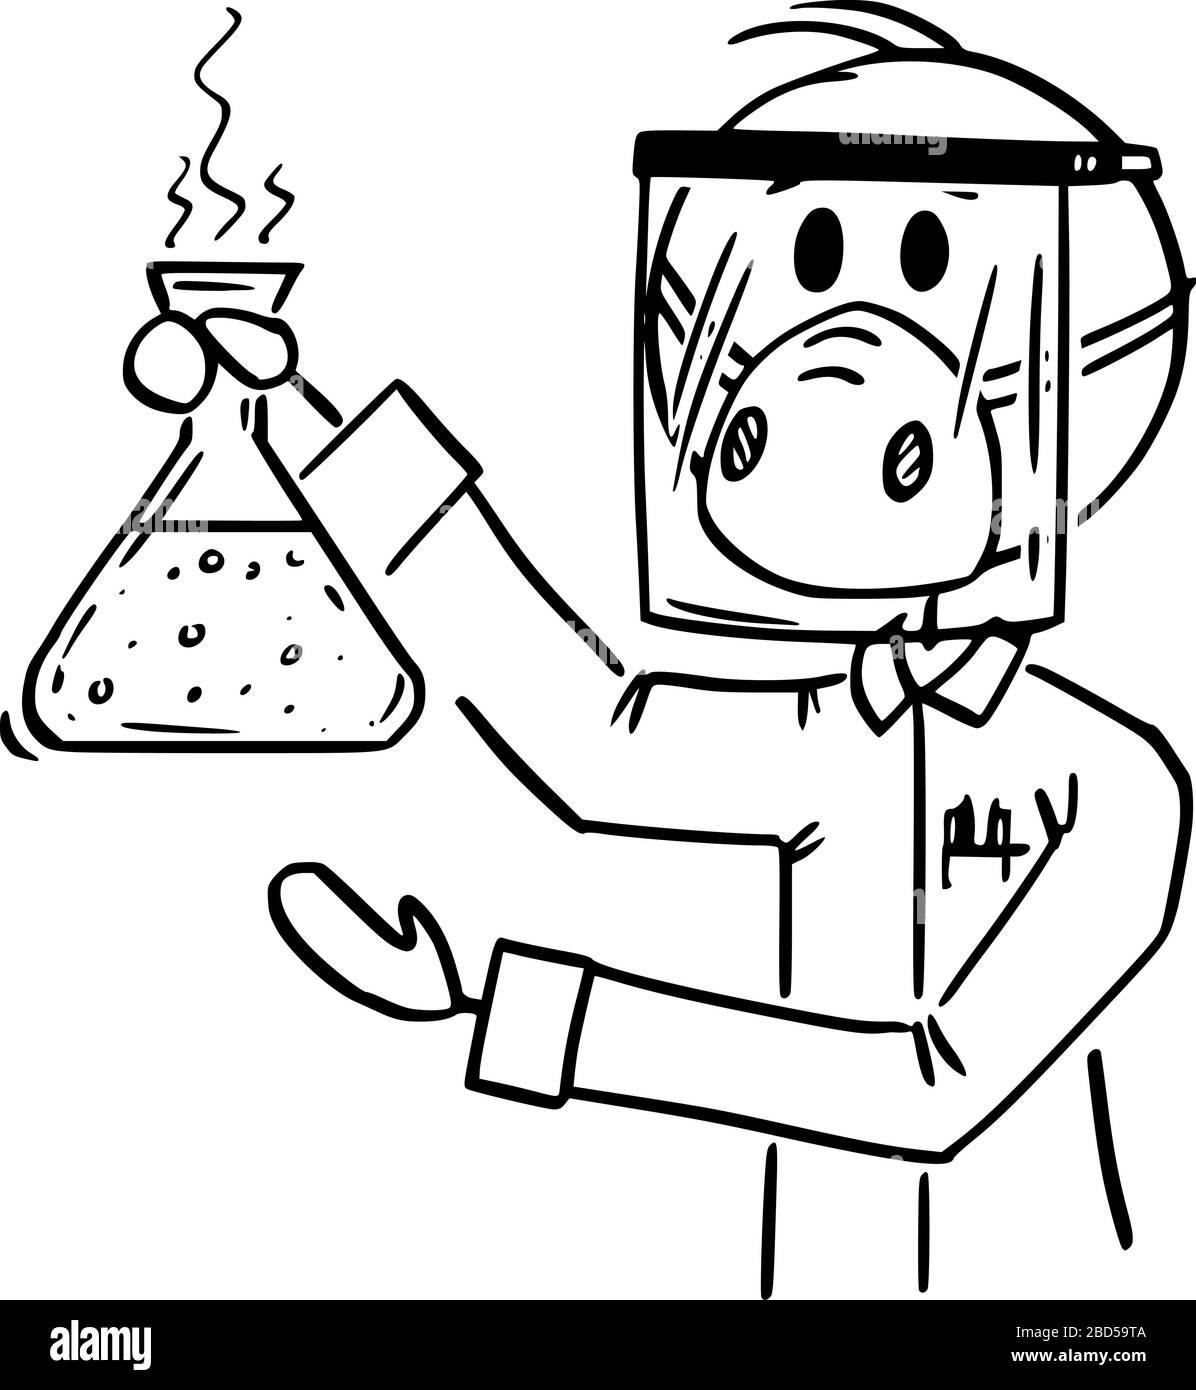 Vektor Cartoon Stick Figur Zeichnung konzeptionelle Illustration des Wissenschaftlers, der im Labor arbeitet und Gesichtsschutz und Maske trägt, die gefährliche chemische oder biologische Proben zeigt. Infektions- oder Medizinkonzept. Stock Vektor